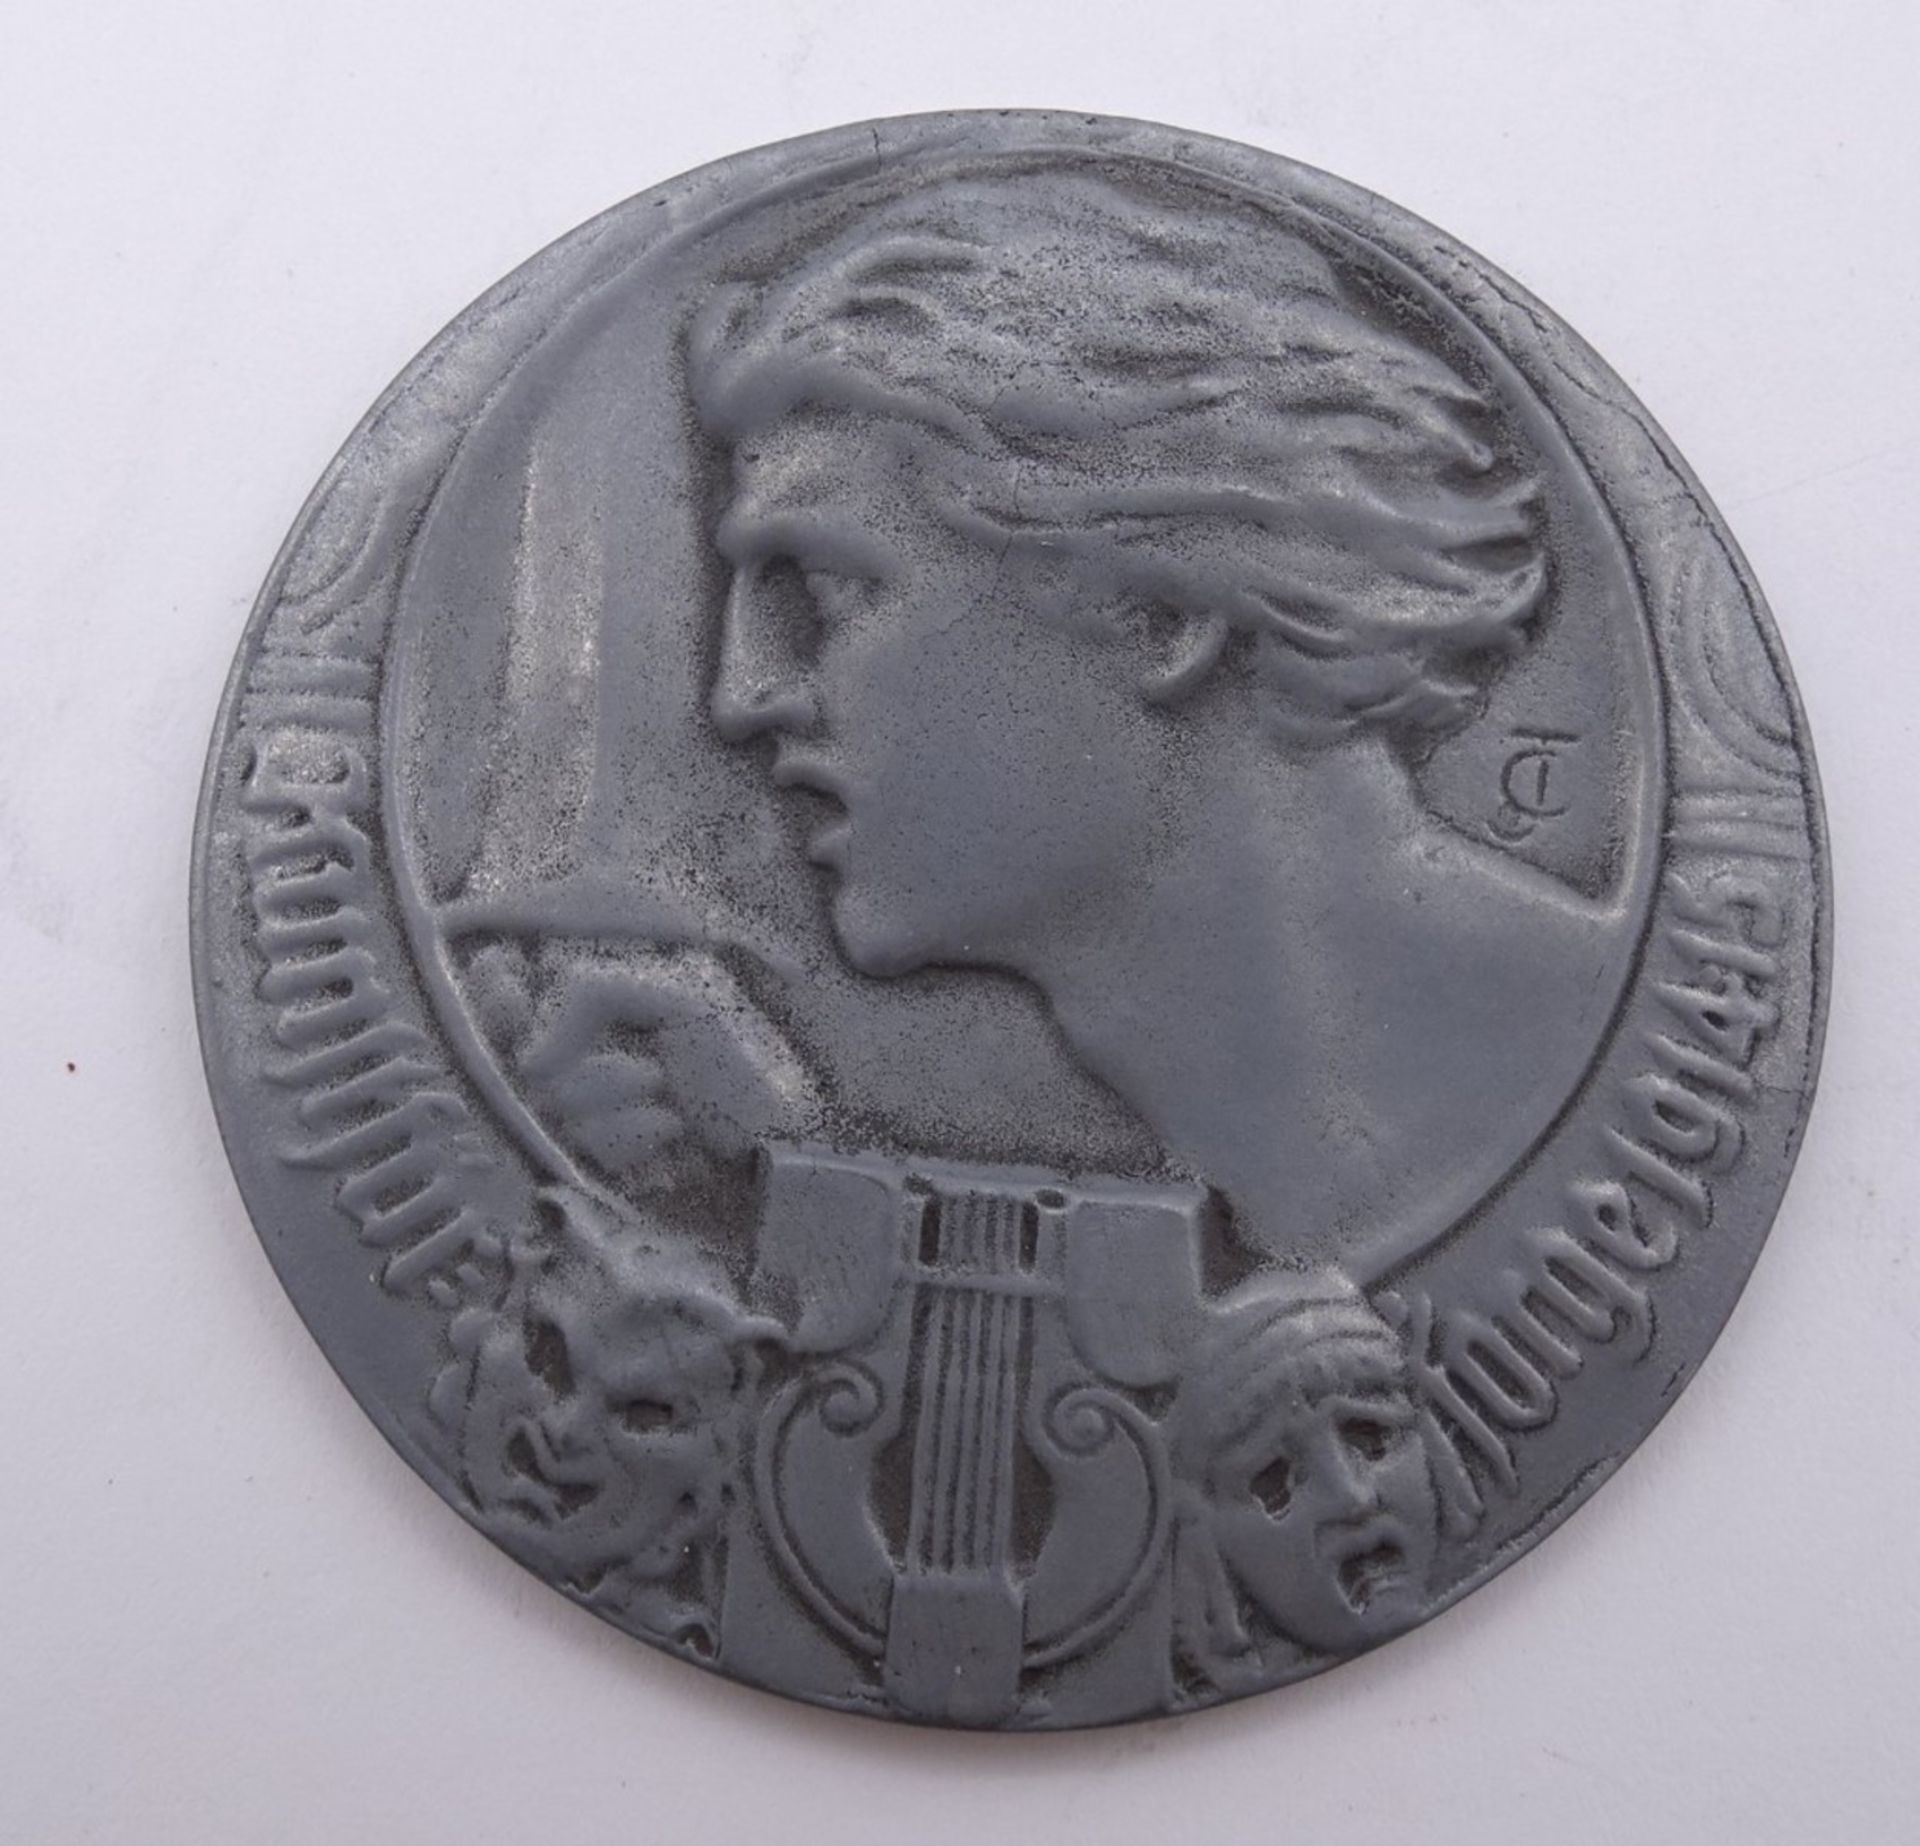 Spendenmedaille der Kunstfürsorge 1915-1915, Metall, Ø 5 cm, Rückseite Zitat von F. v. Schiller - Image 2 of 2